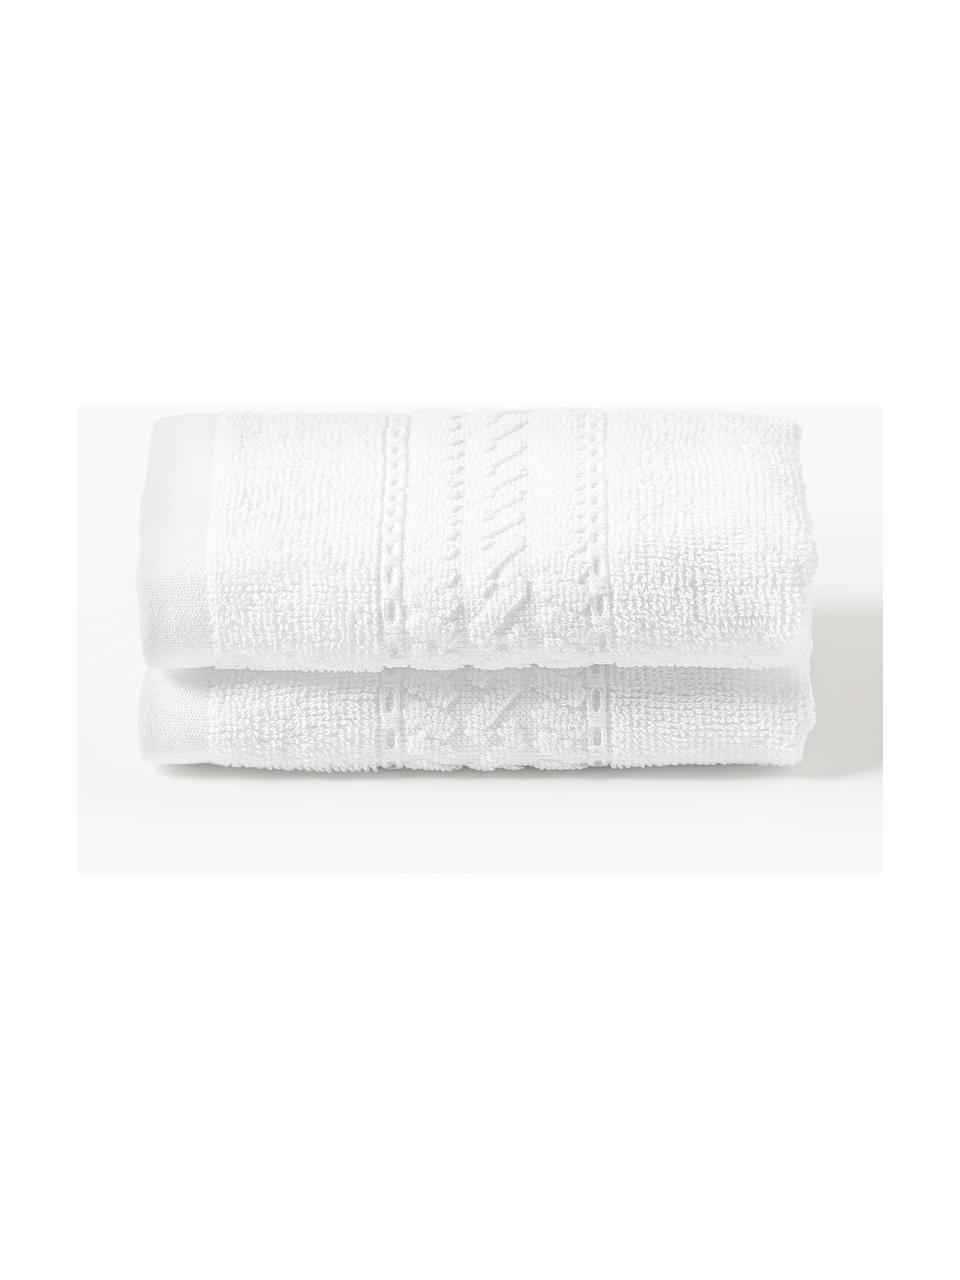 Ręcznik Cordelia, różne rozmiary, Biały, Ręcznik kąpielowy, S 70 x D 140 cm